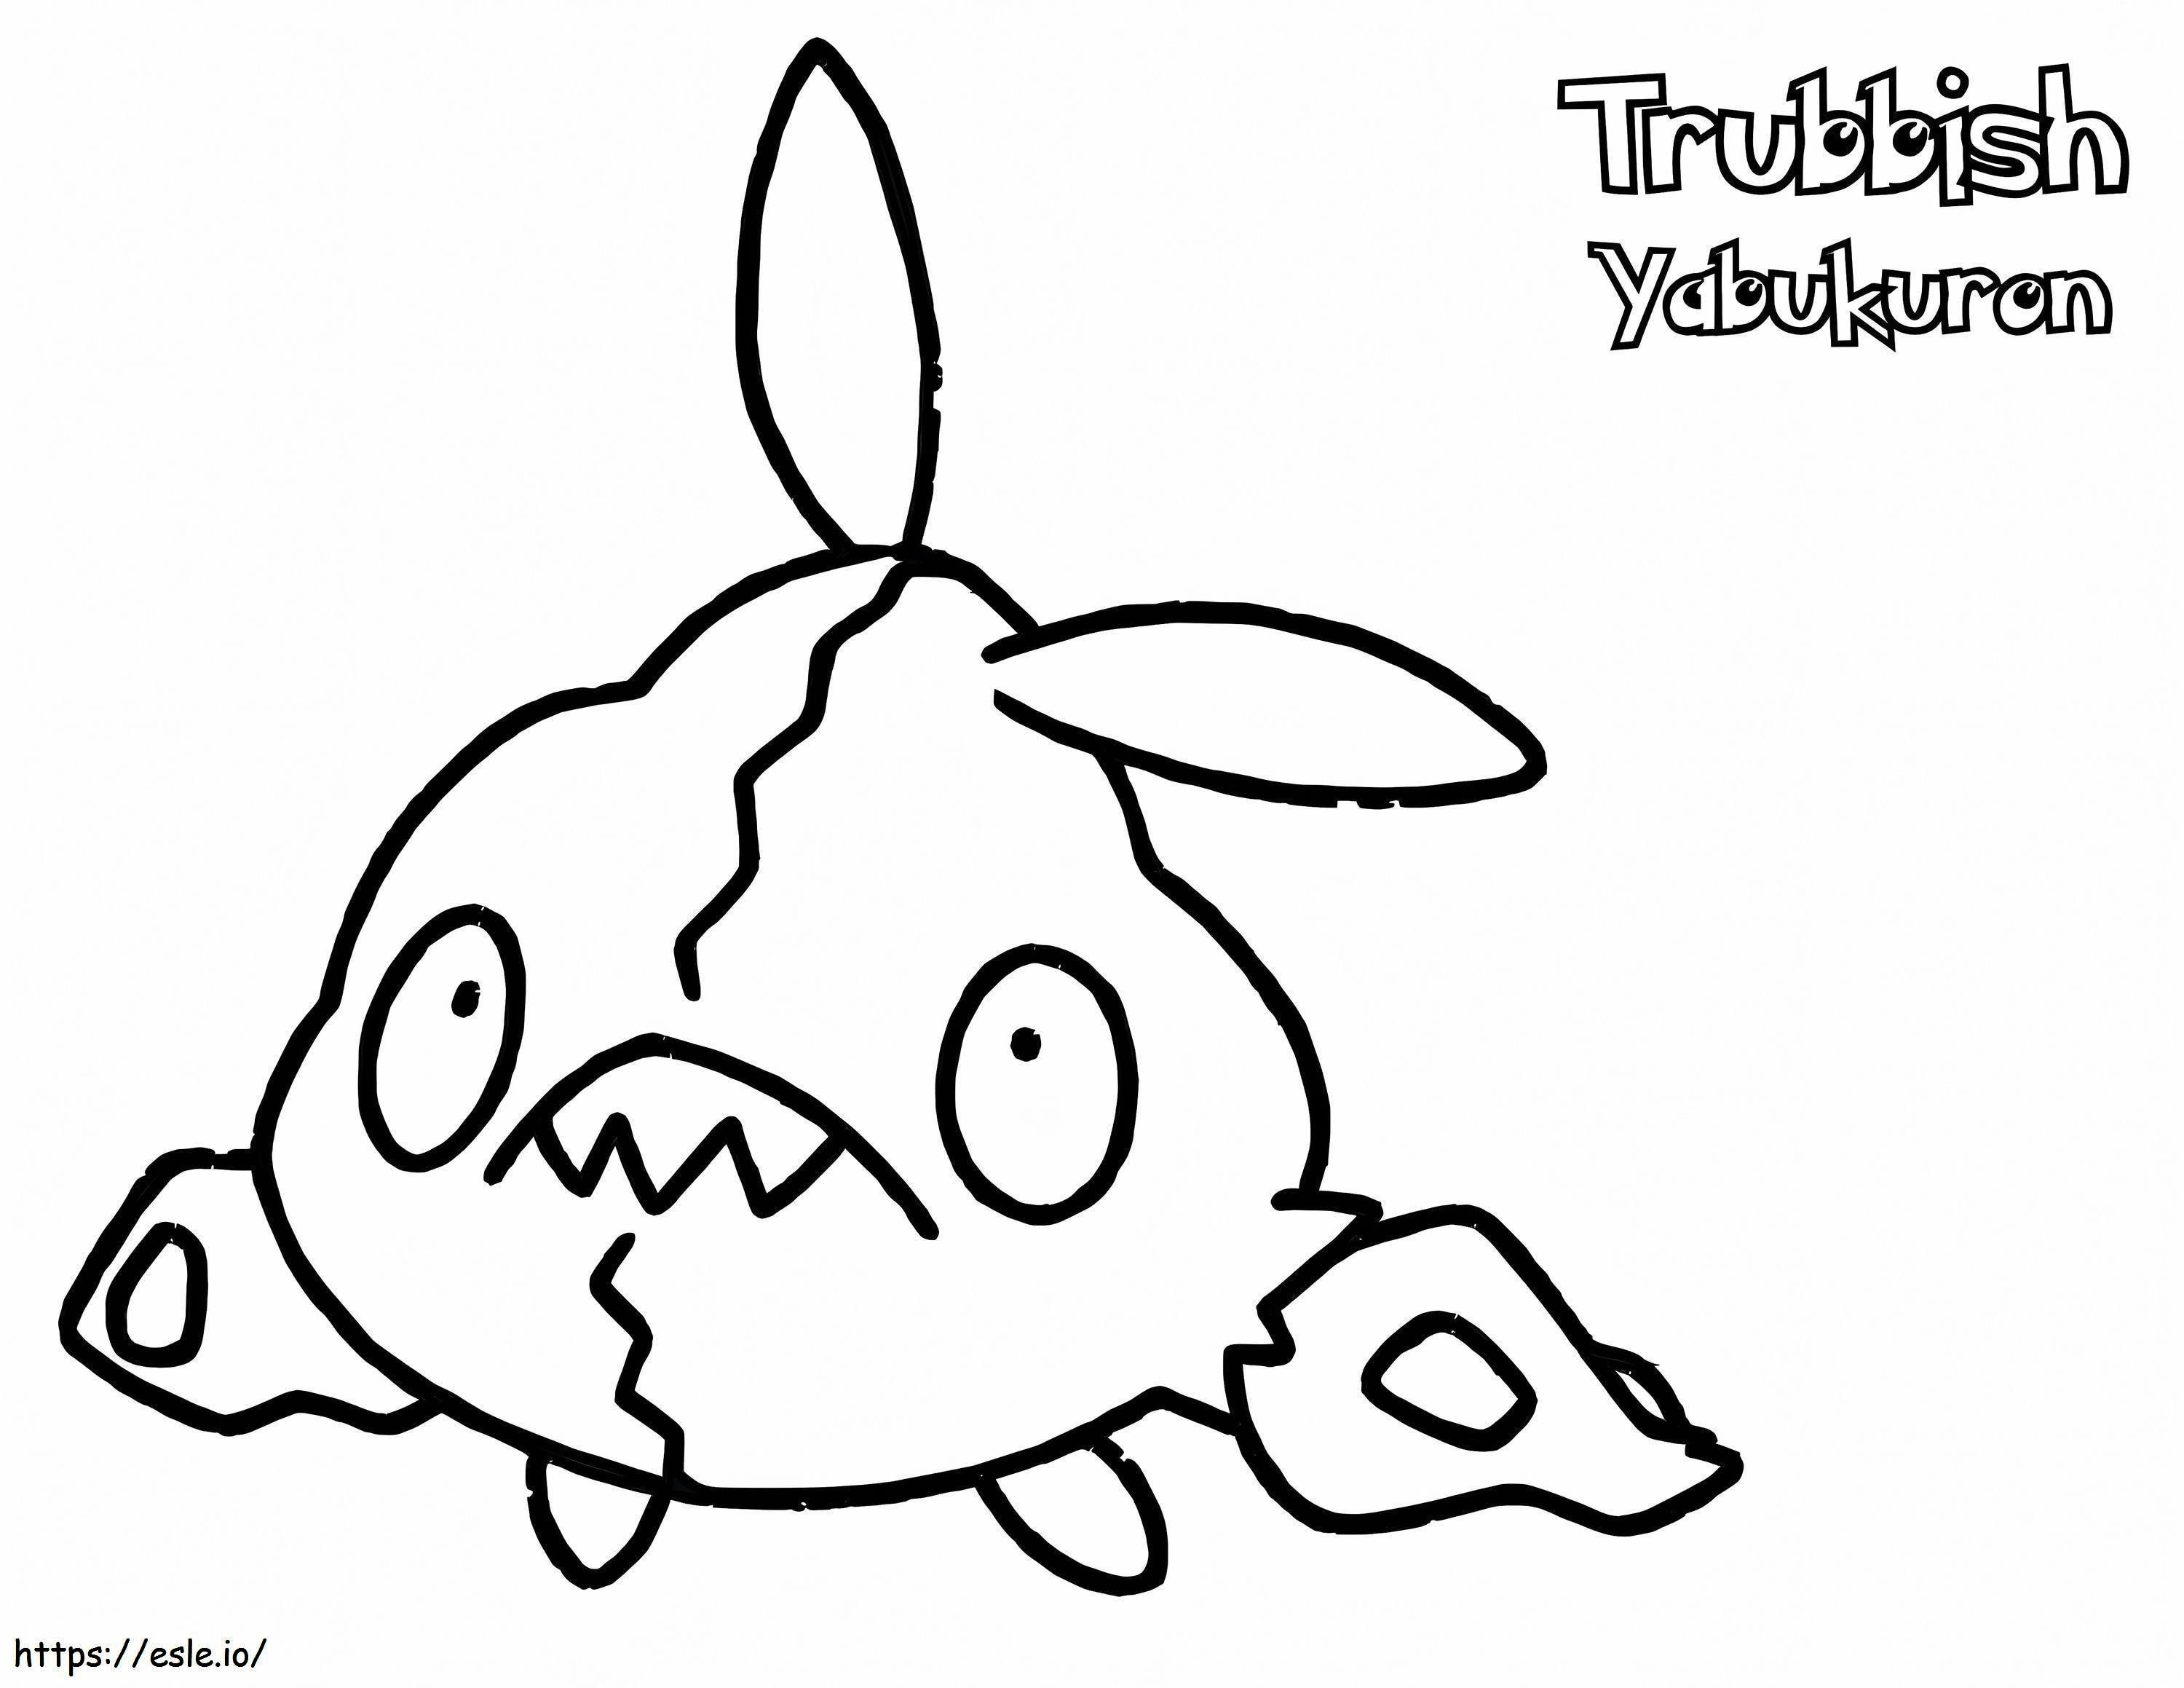 Trubbish Gen 5 Pokemon kifestő